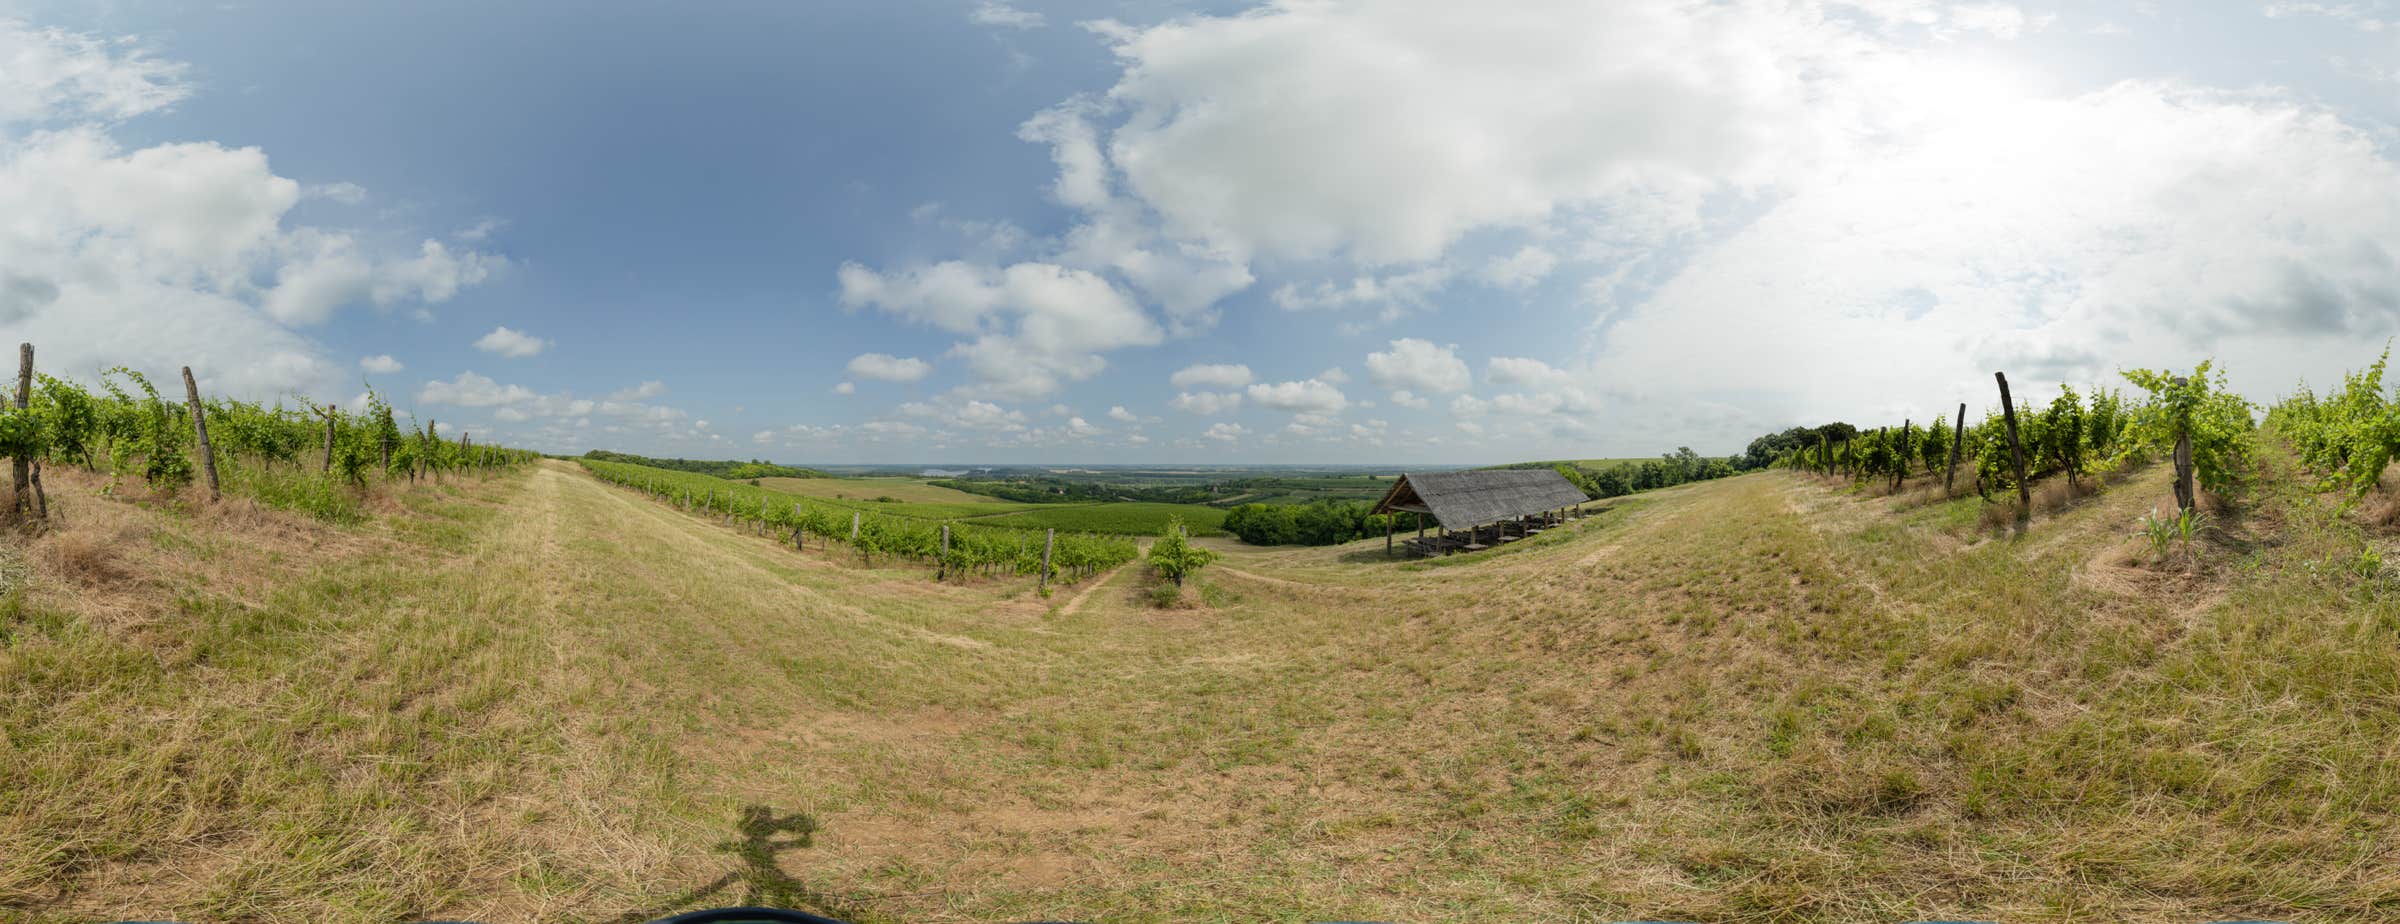 Panoramska slika od 360° prikazuje vinograd s više redova vinove loze inatkrivenim prostorom za sjedenje. Slika je povezana s panoramskim obilaskom.